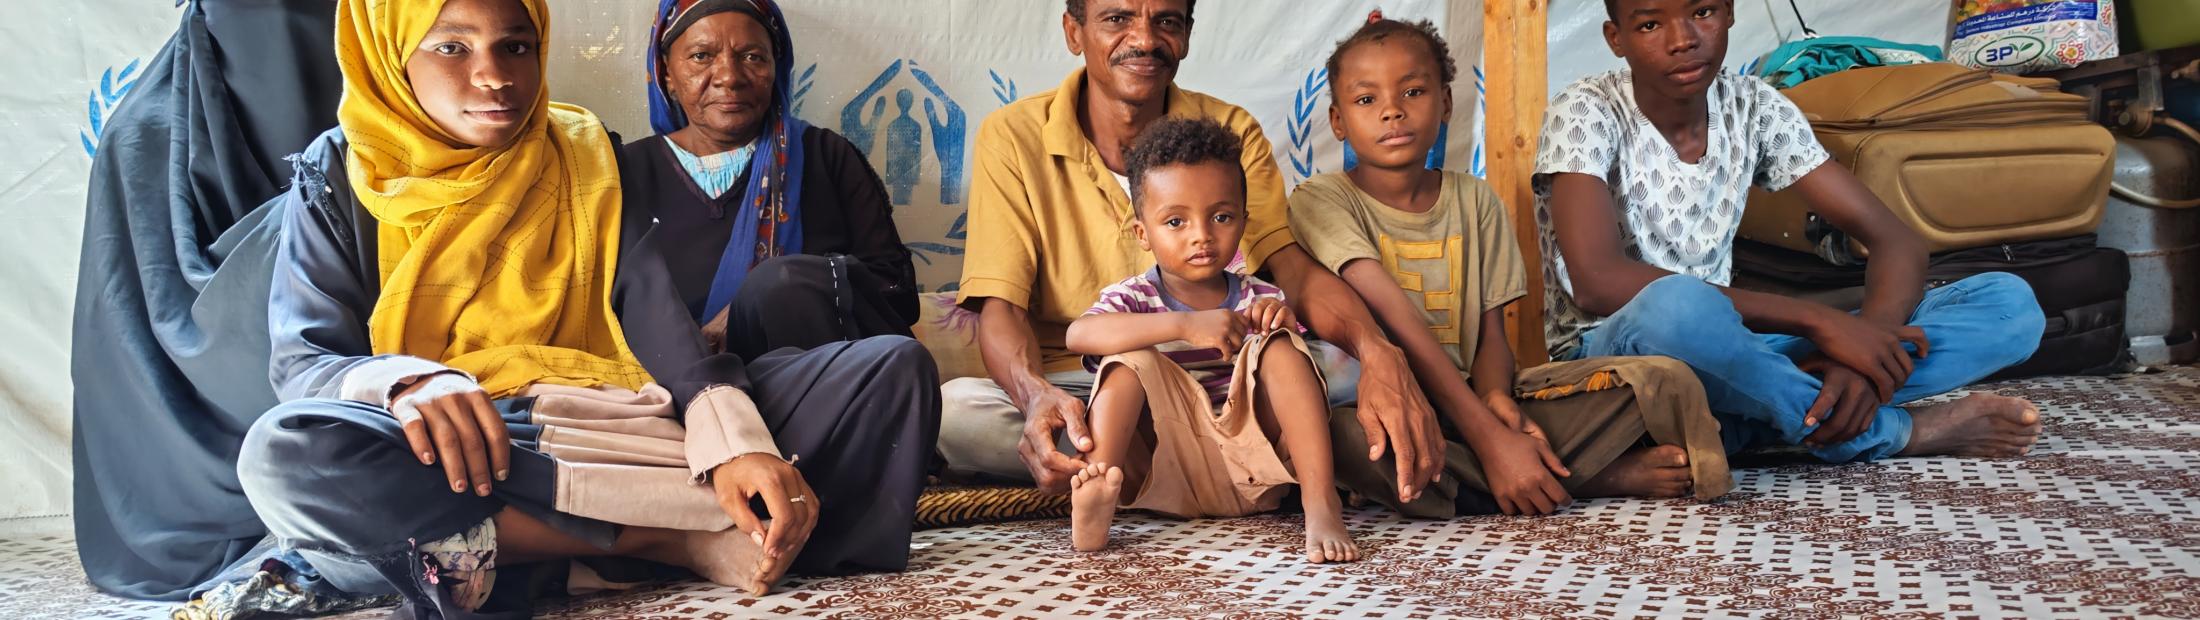 Iémen: crise de uma geração